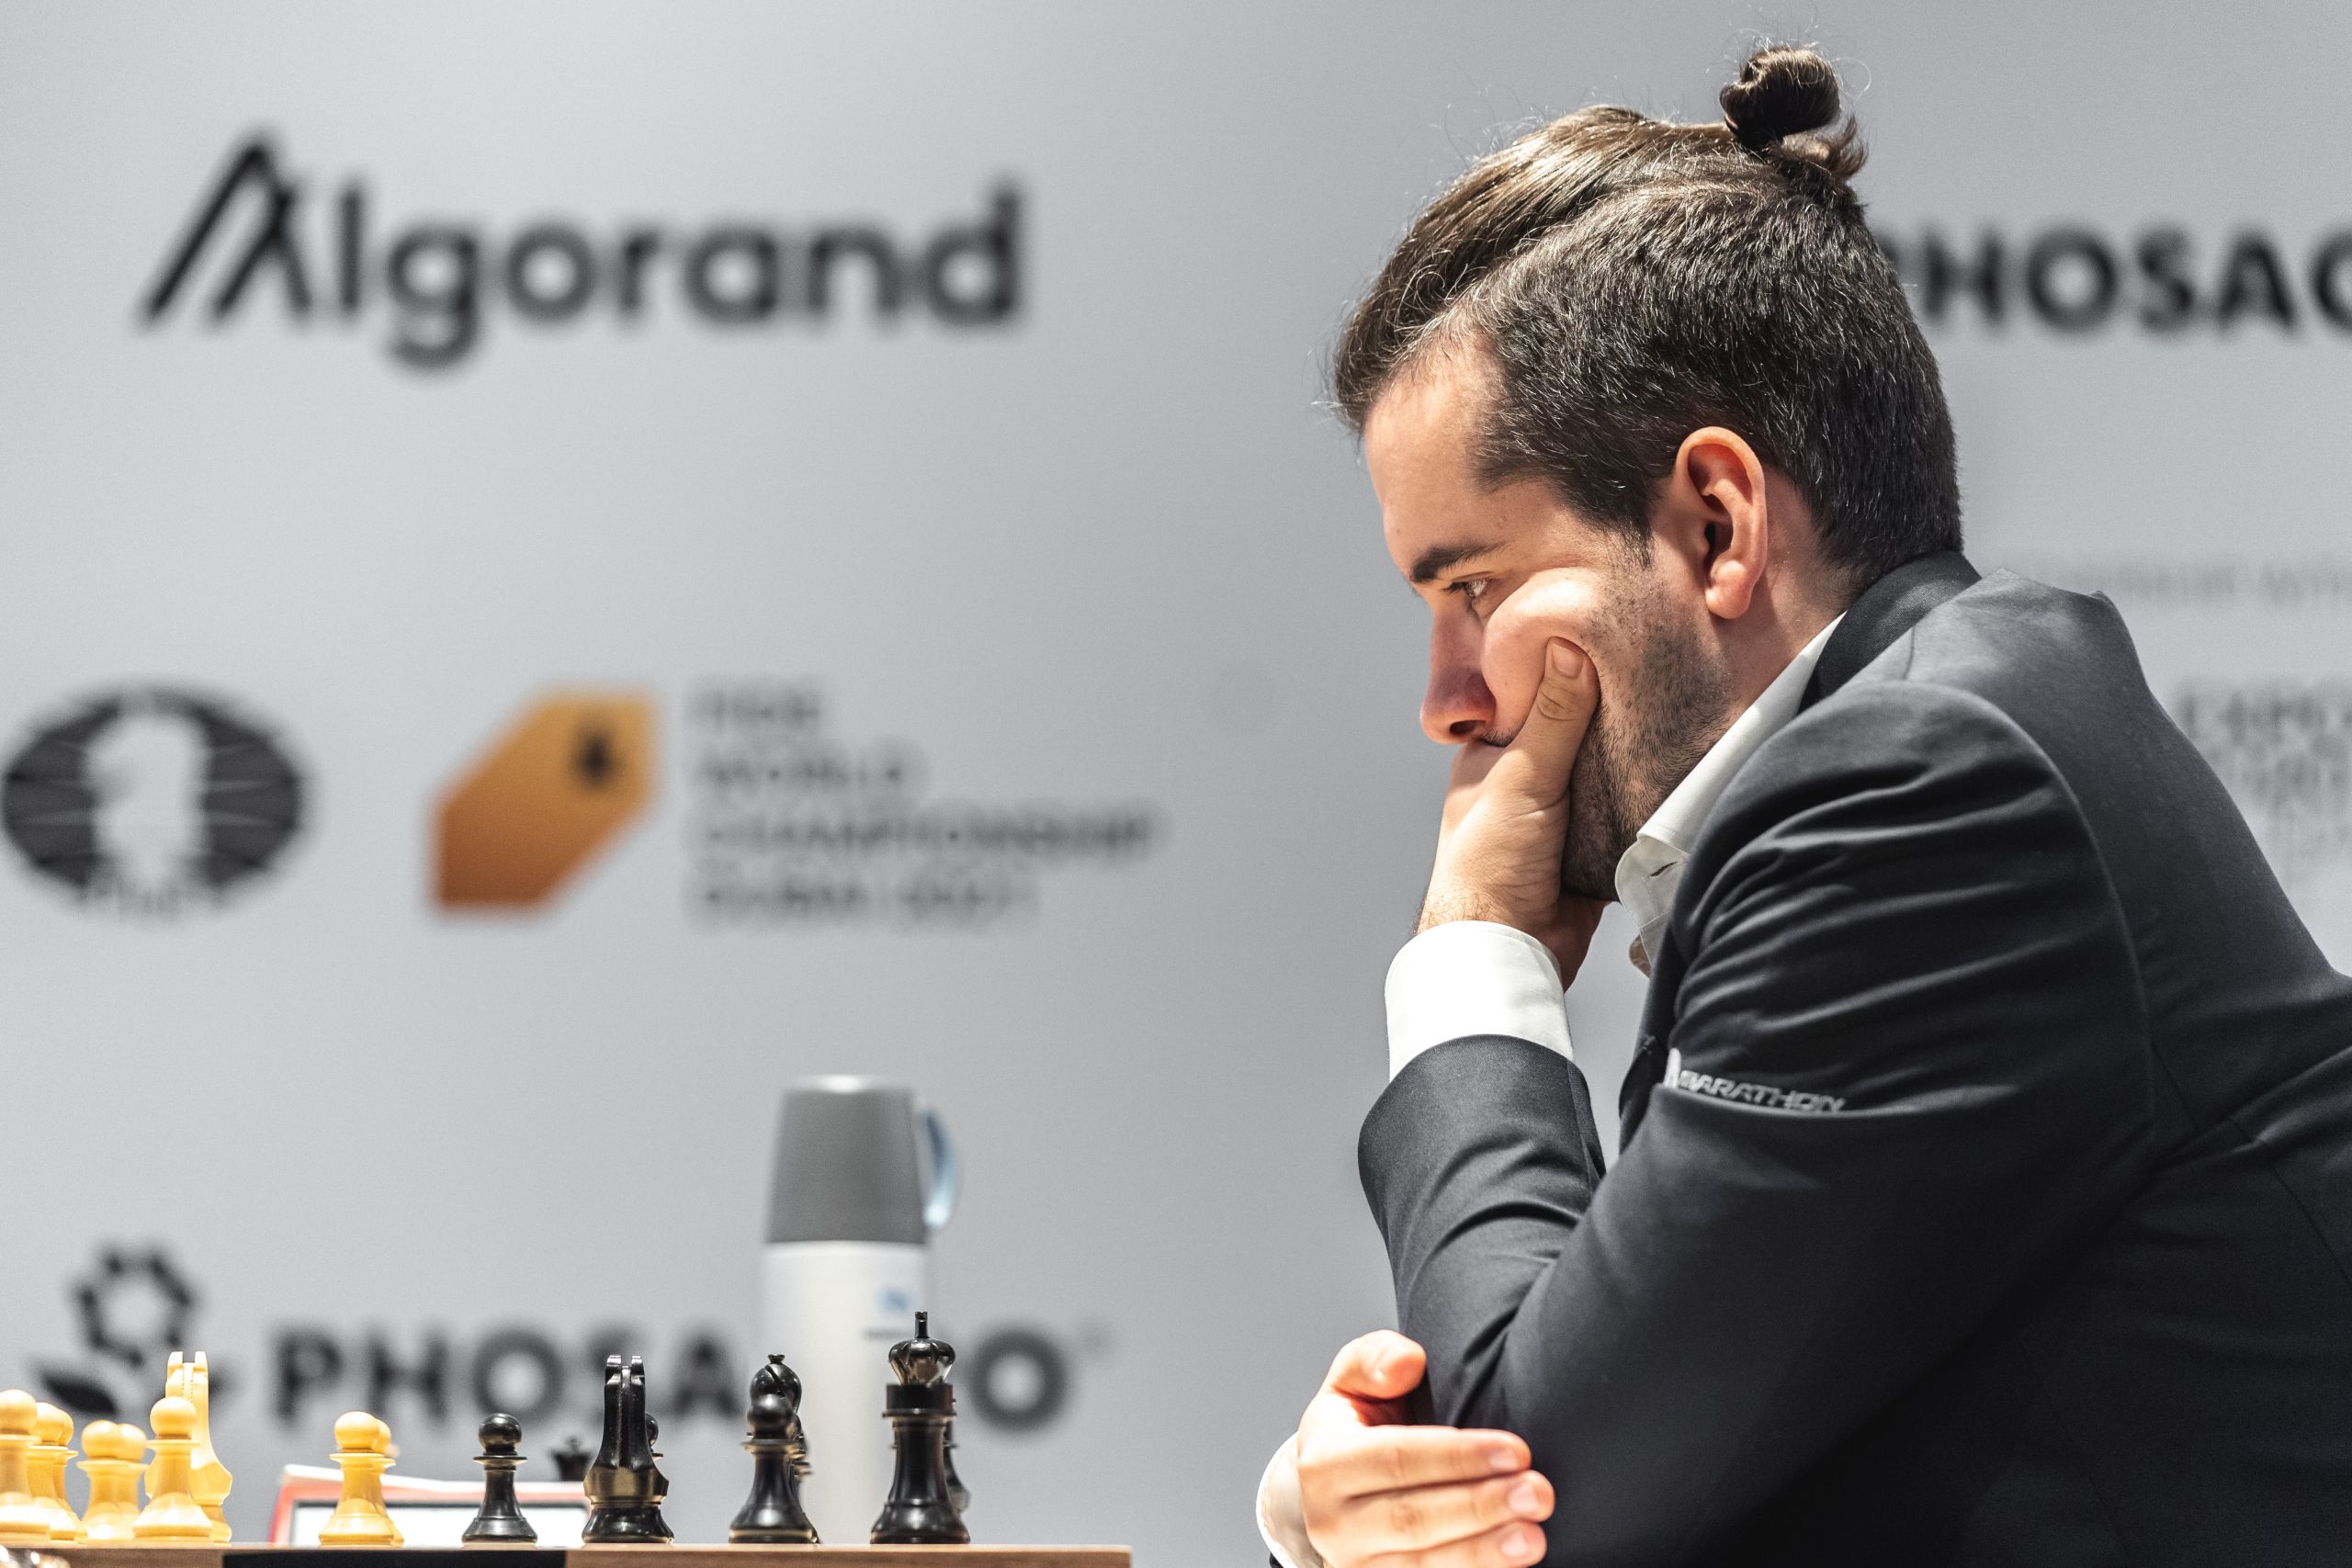 Carlsen versus Nepomniachtchi: FIDE World Championship Round 2